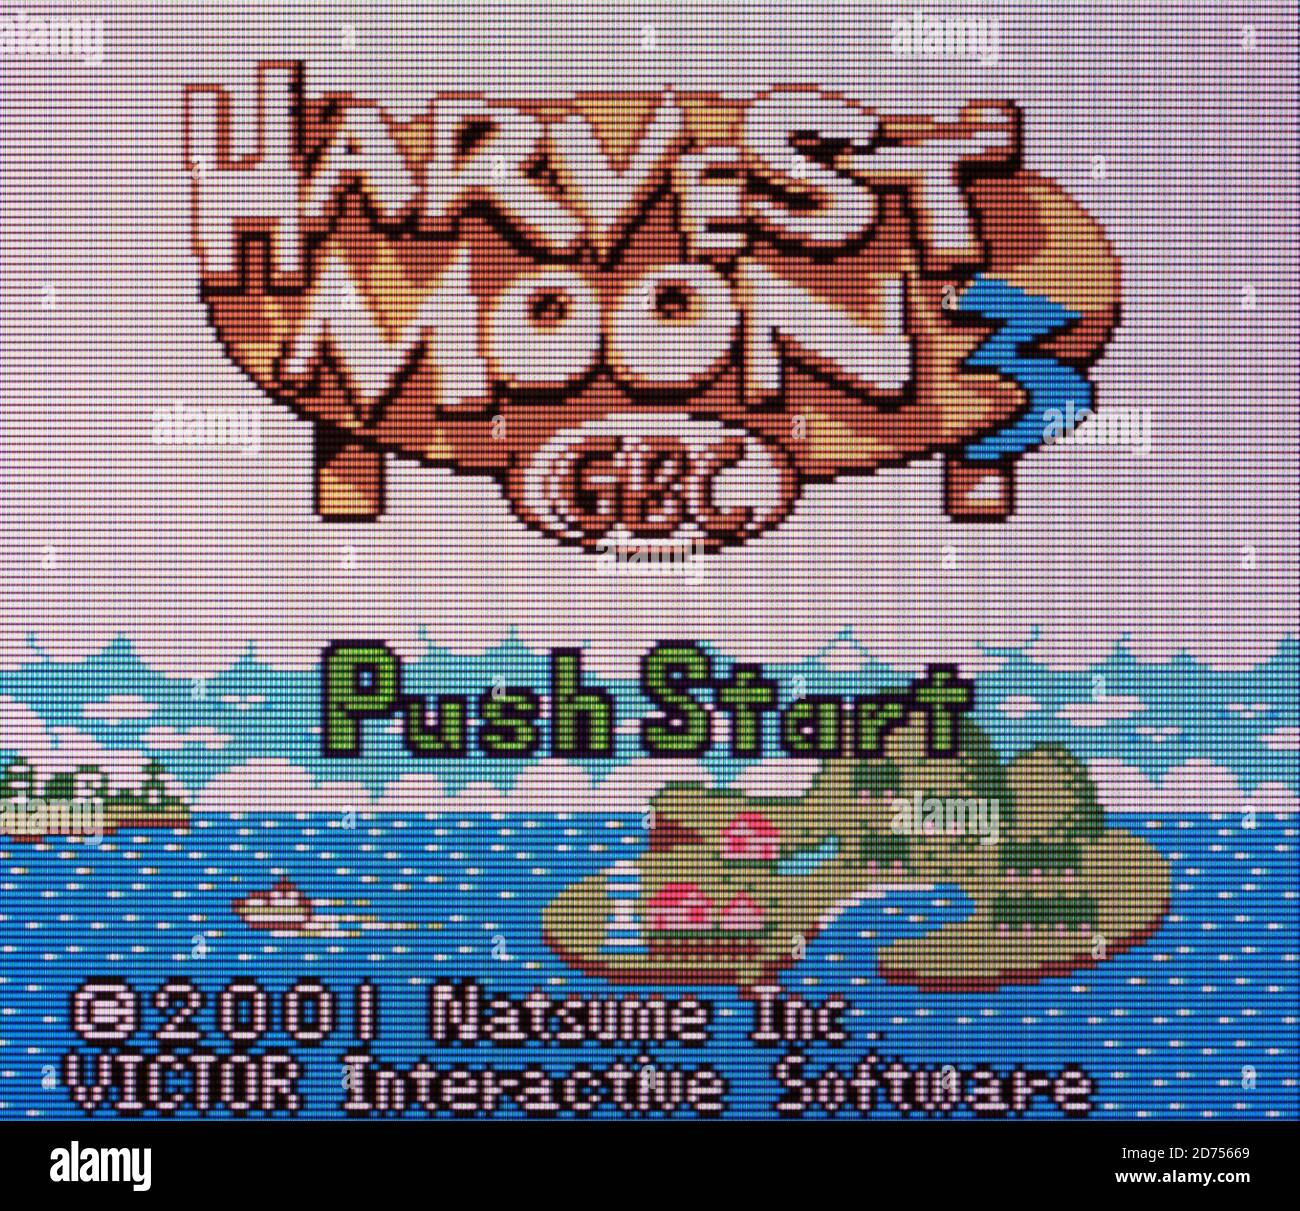 Harvest Moon 3 - jeu Nintendo Boy Color Videogame - Usage éditorial uniquement Banque D'Images